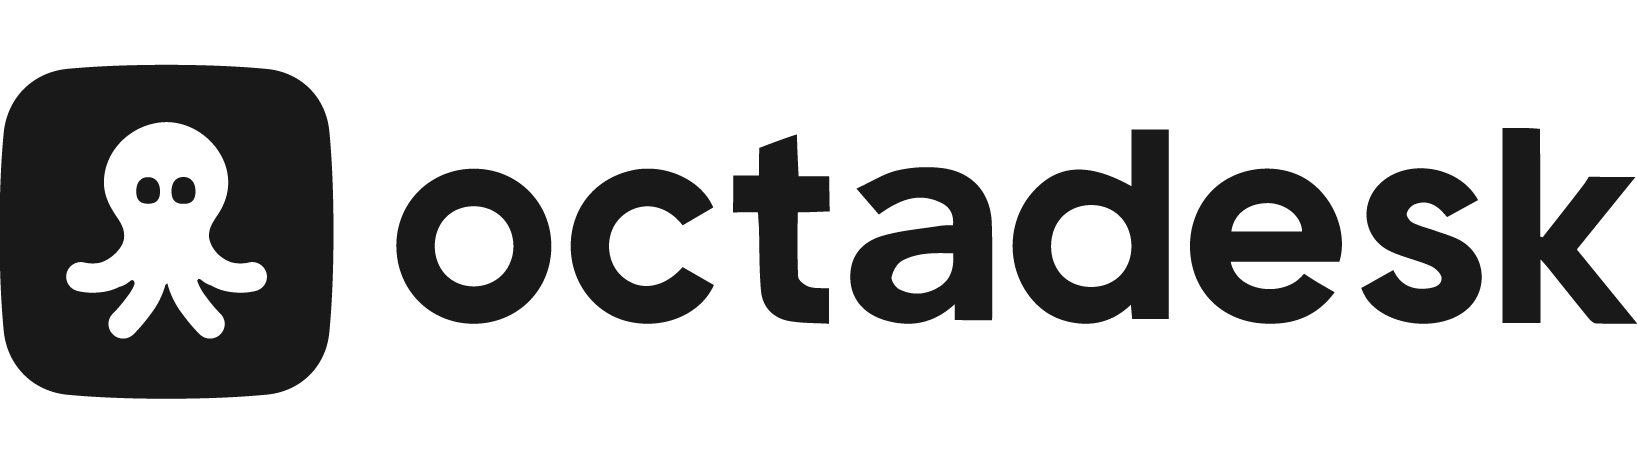 octadesk logo